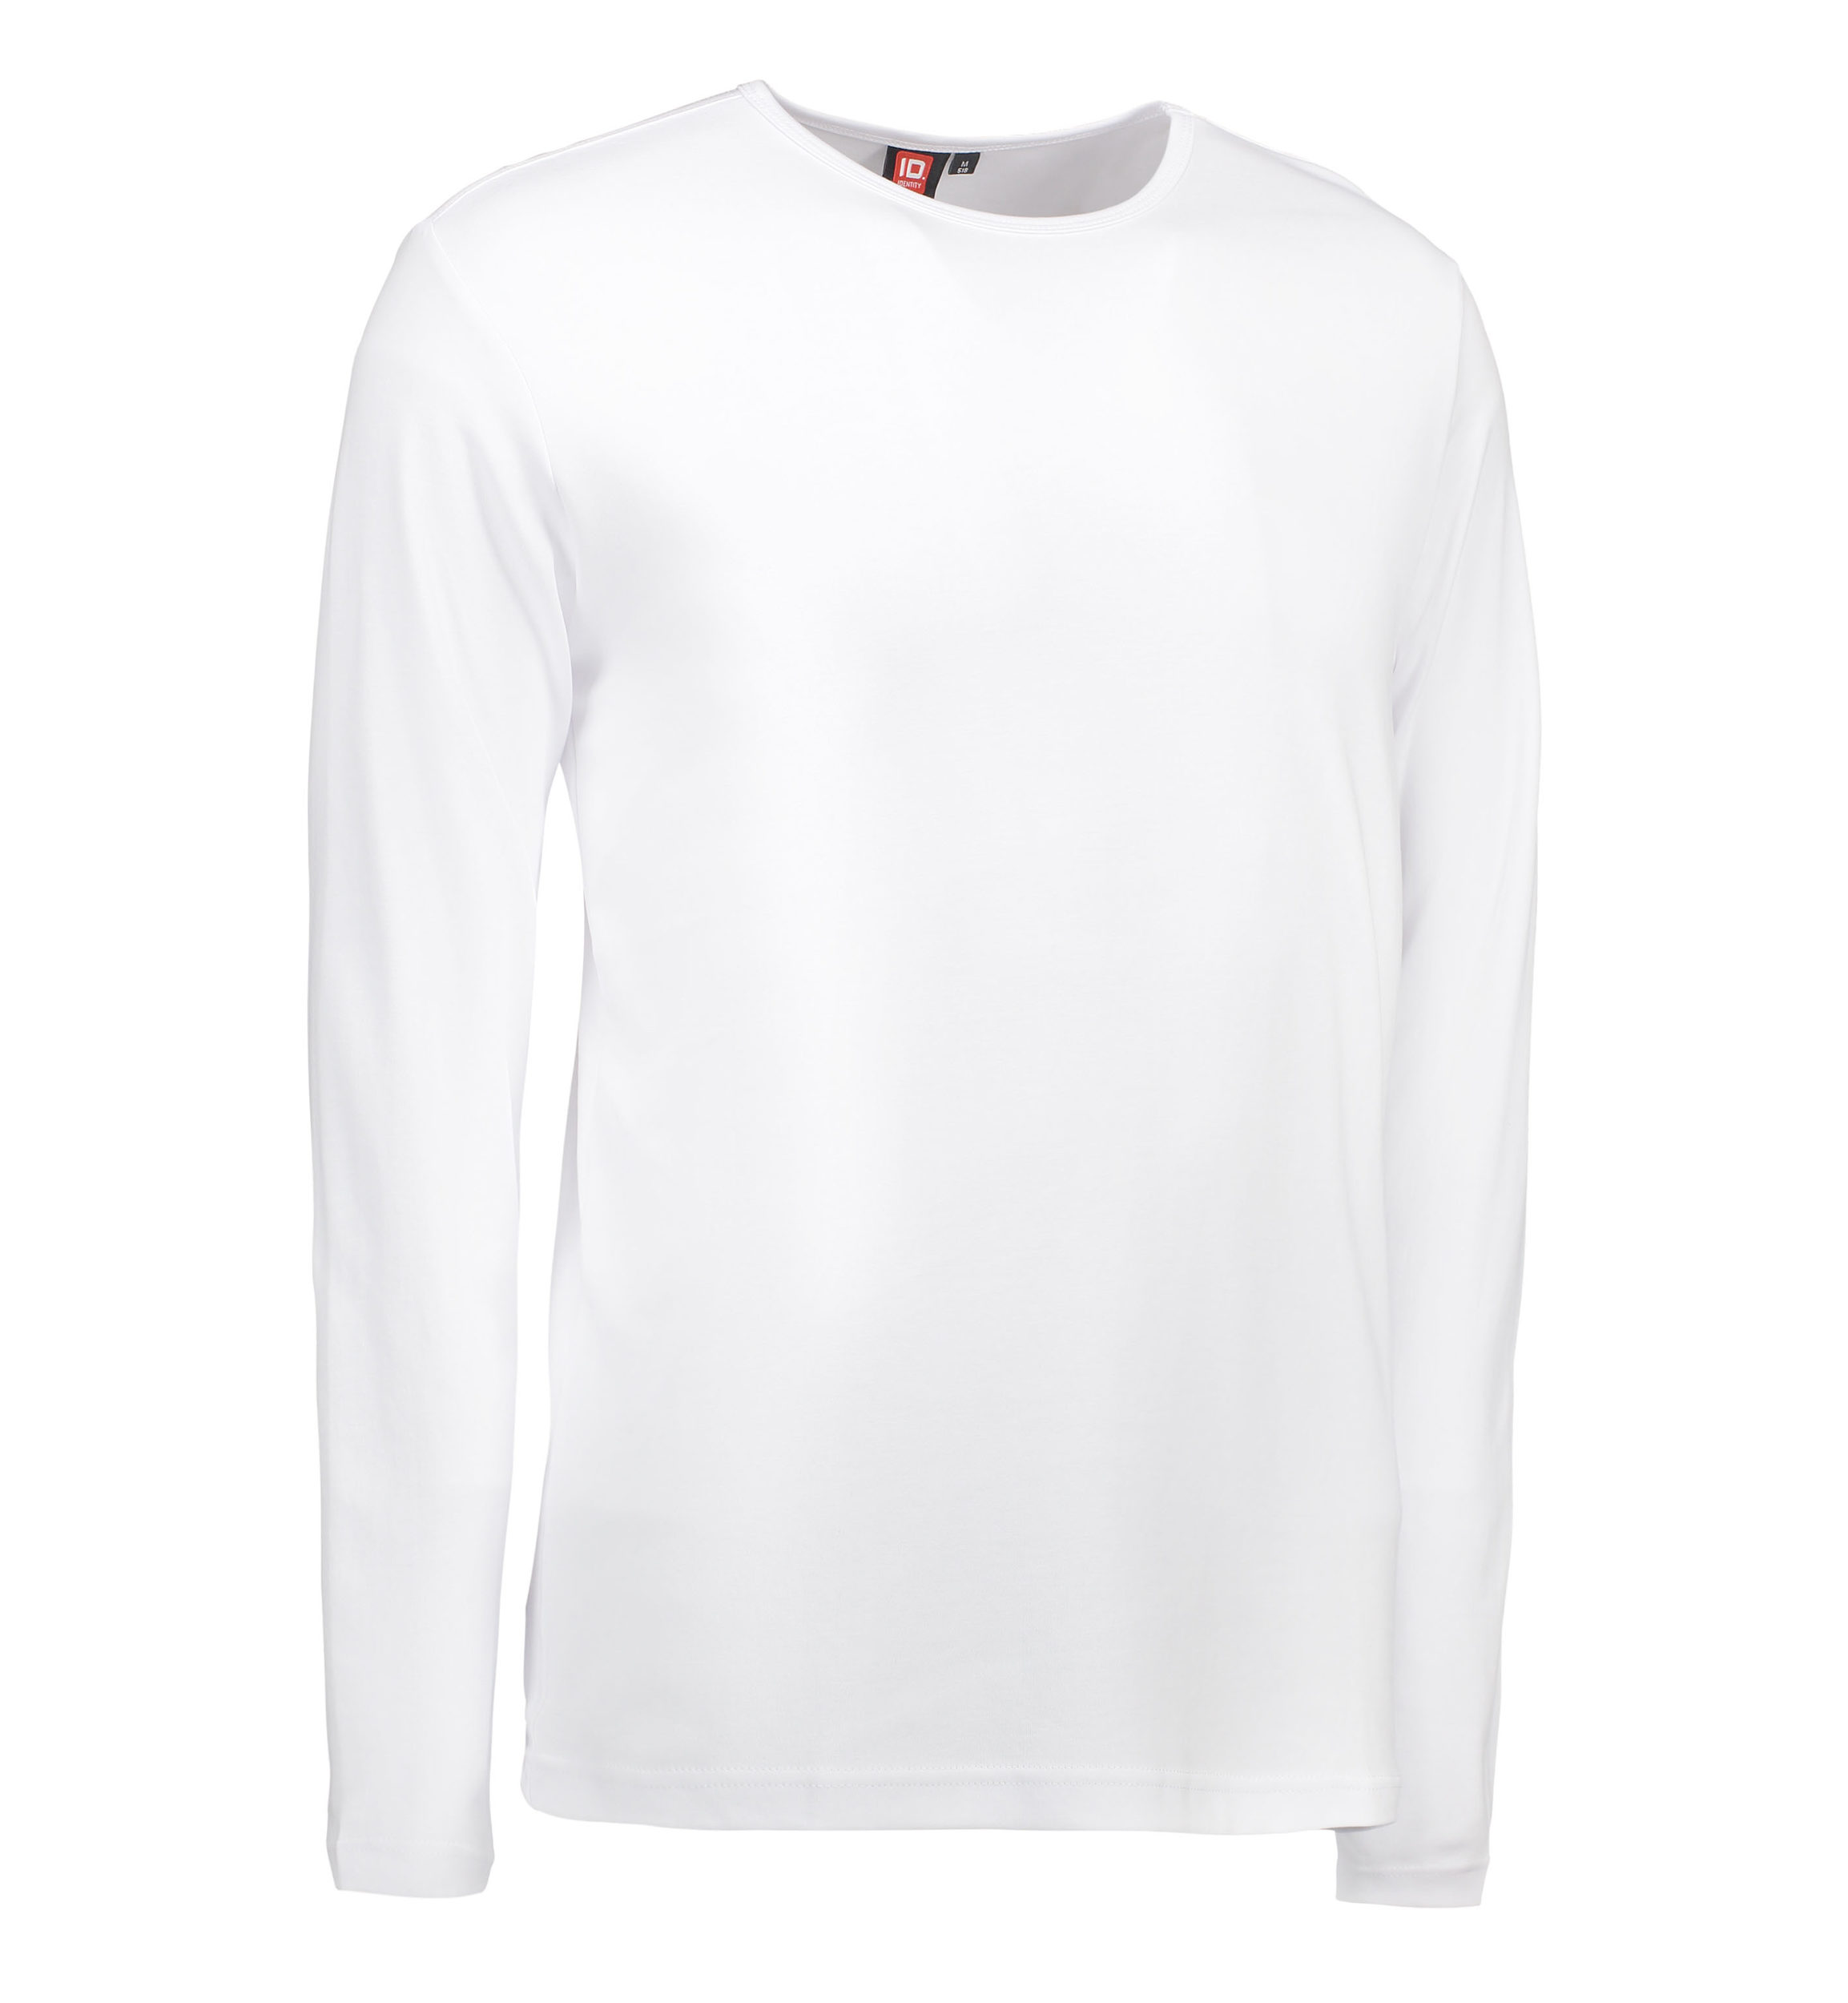 Billede af Hvid langærmet t-shirt til mænd - XL hos Sygeplejebutikken.dk